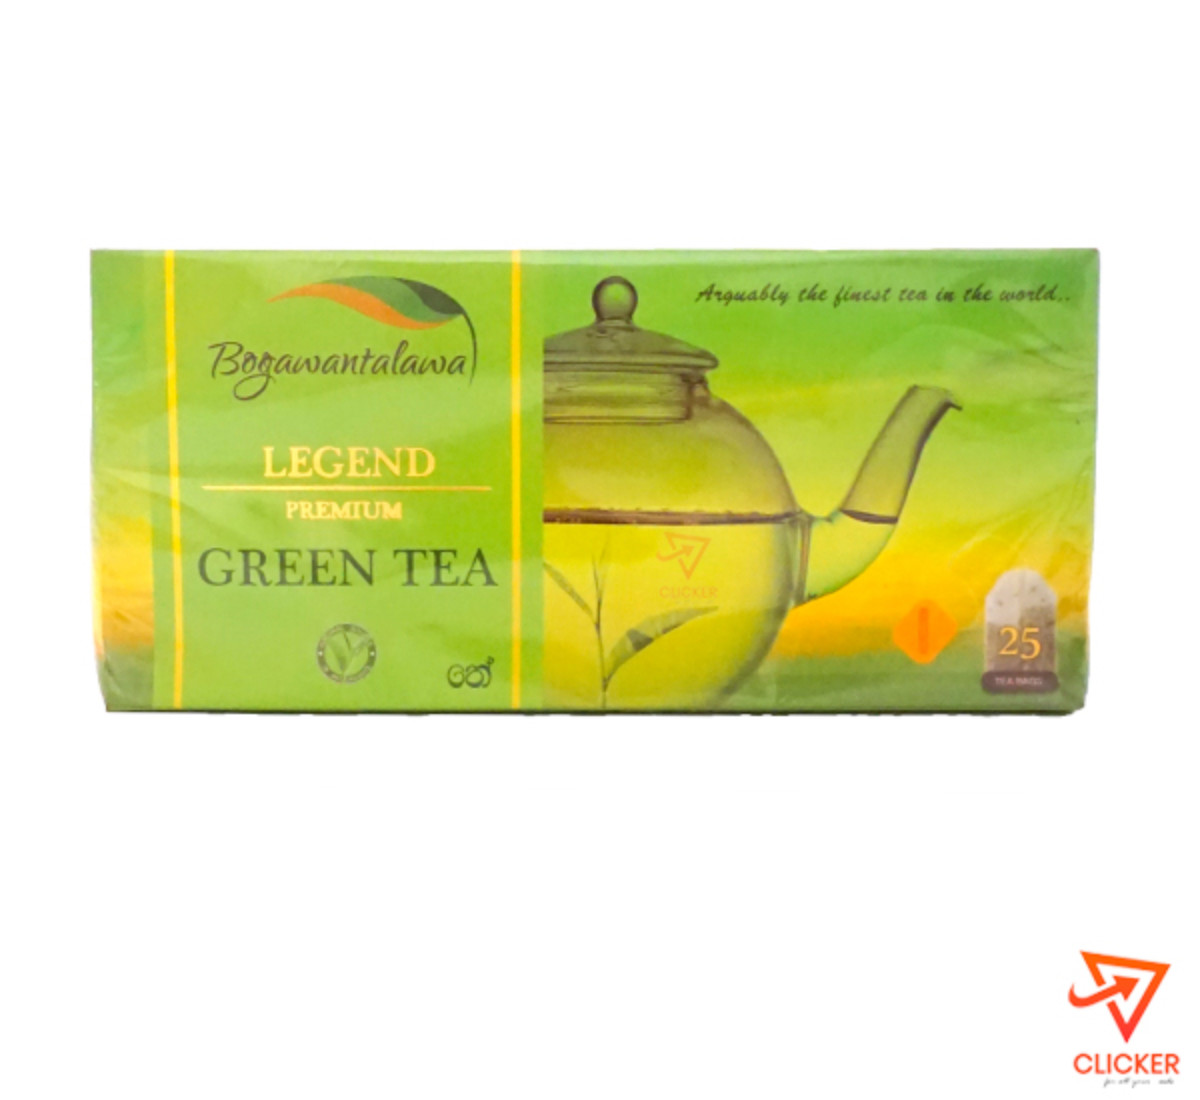 Clicker product BOGAWANTALAWA legend premium green tea (25 tea bags) 919